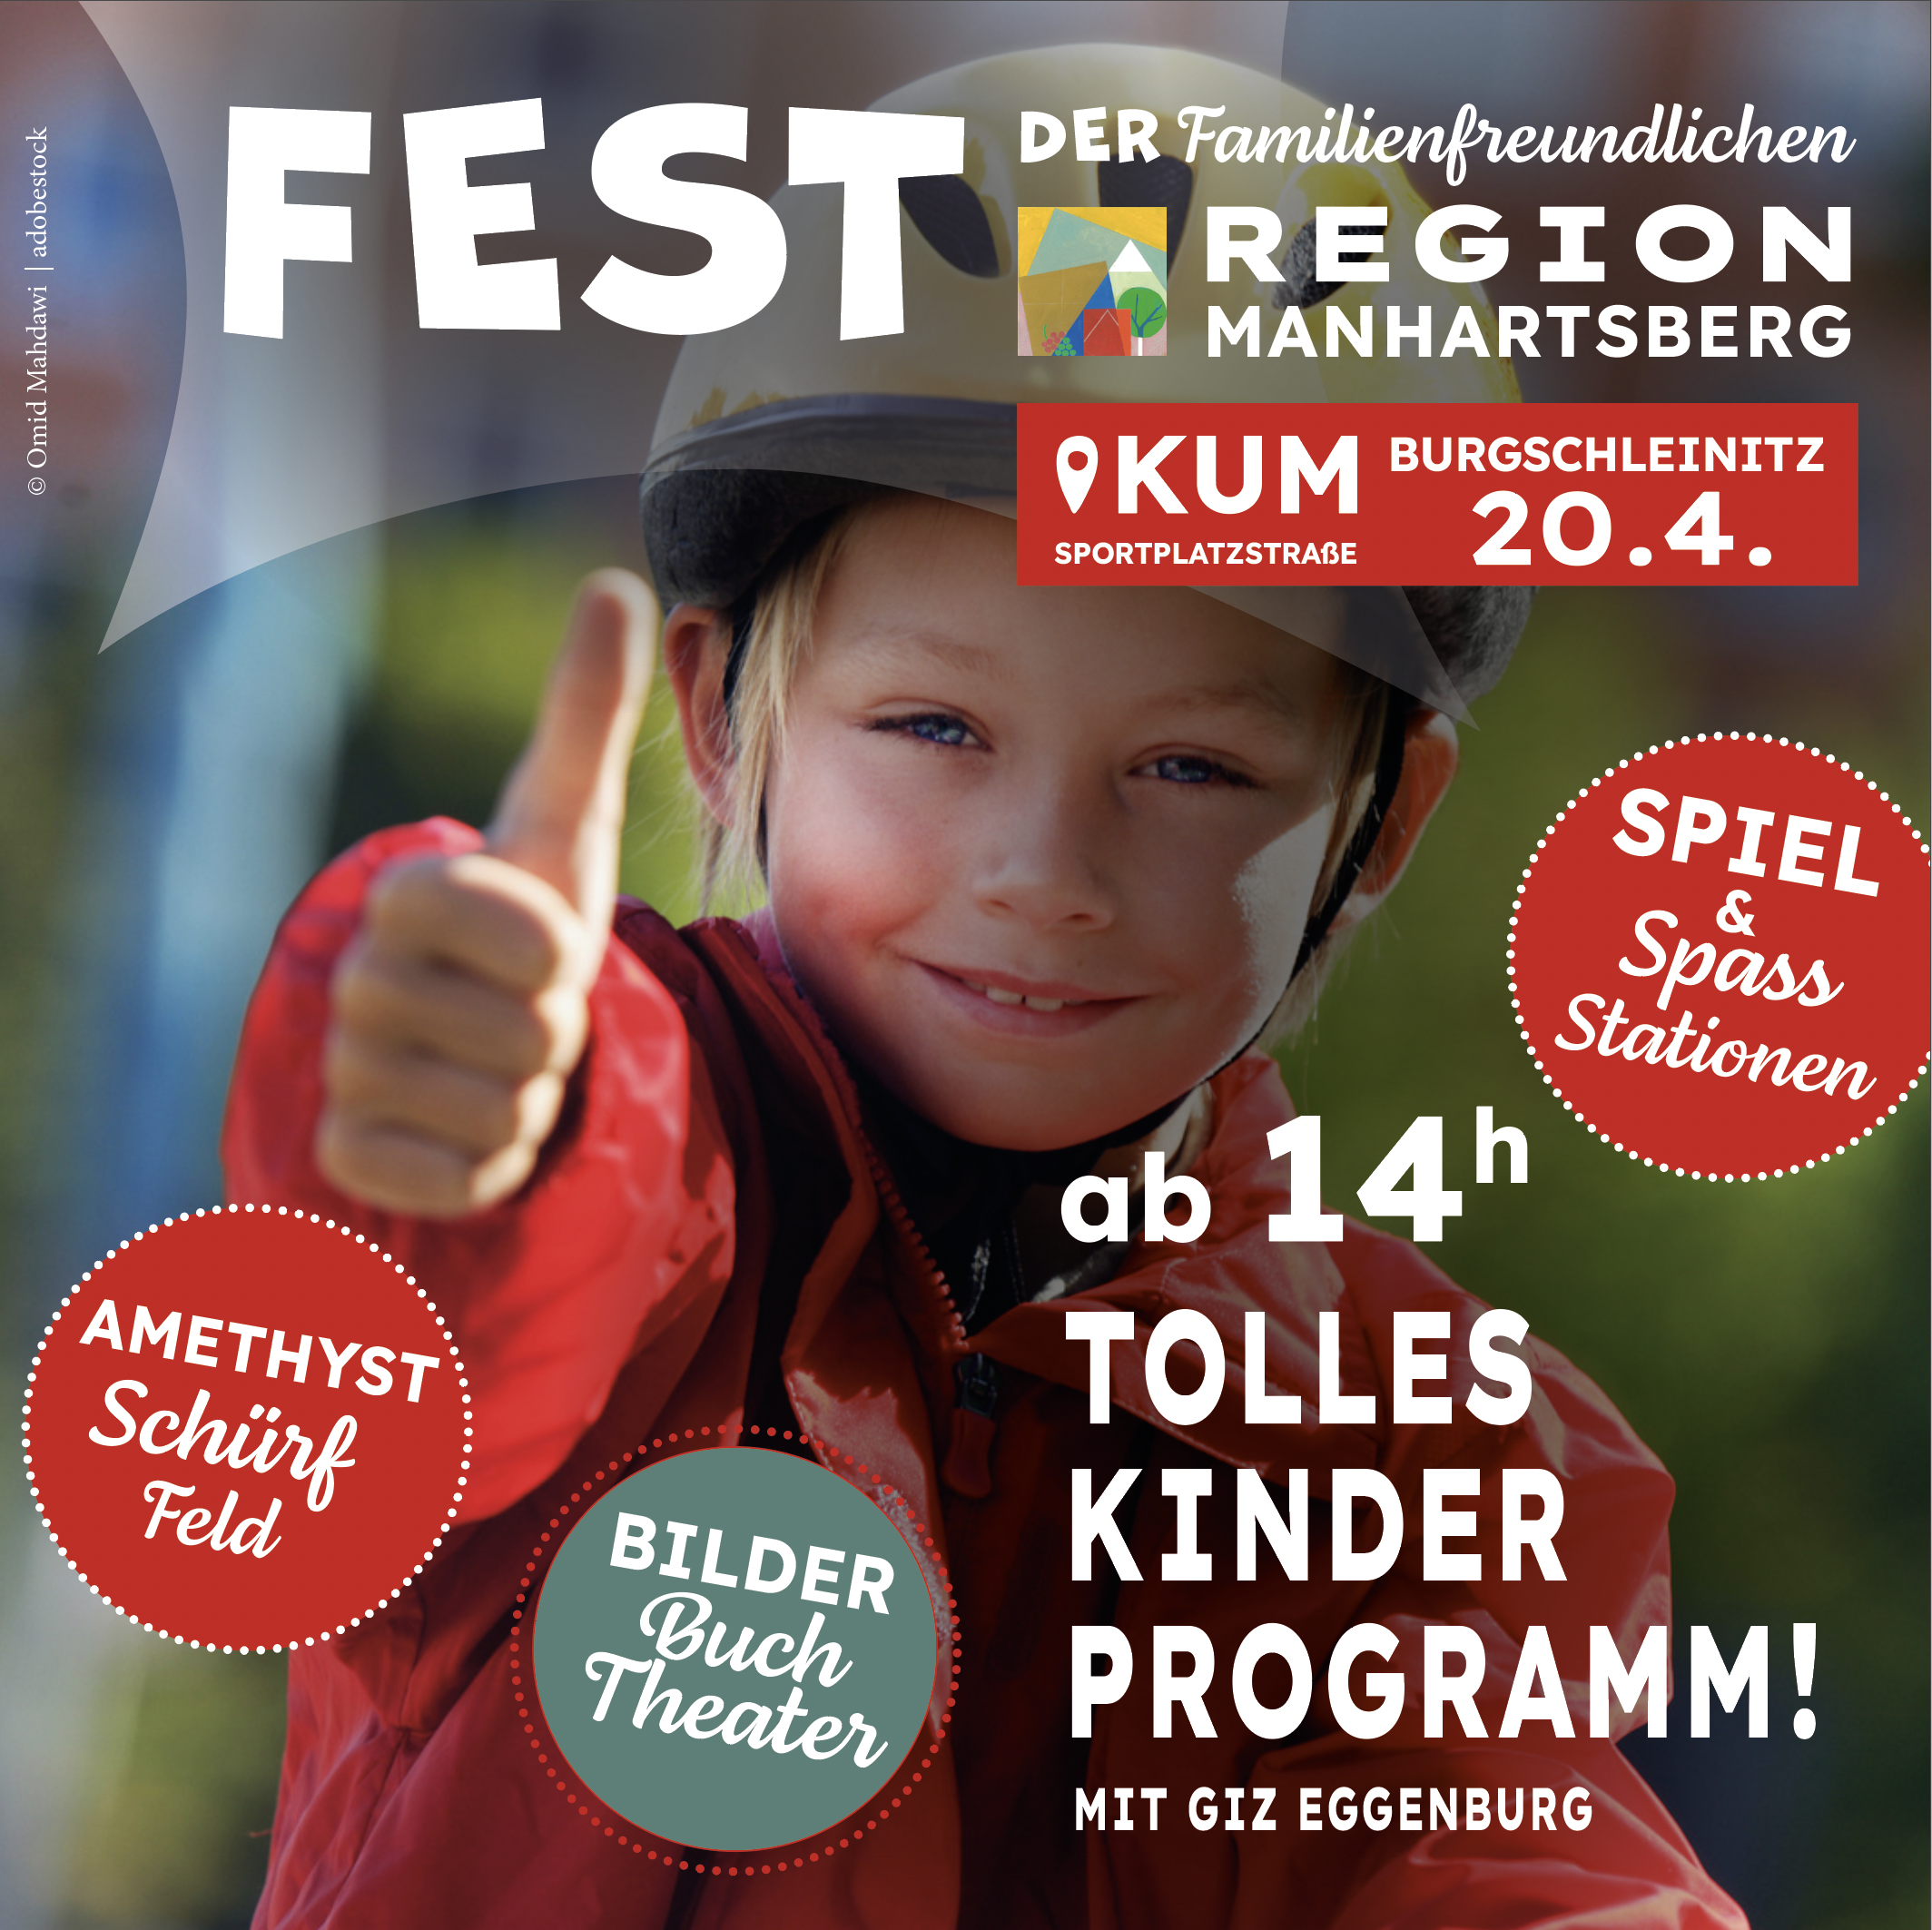 Read more about the article 1. Fest der familienfreundlichen Region Manhartsberg